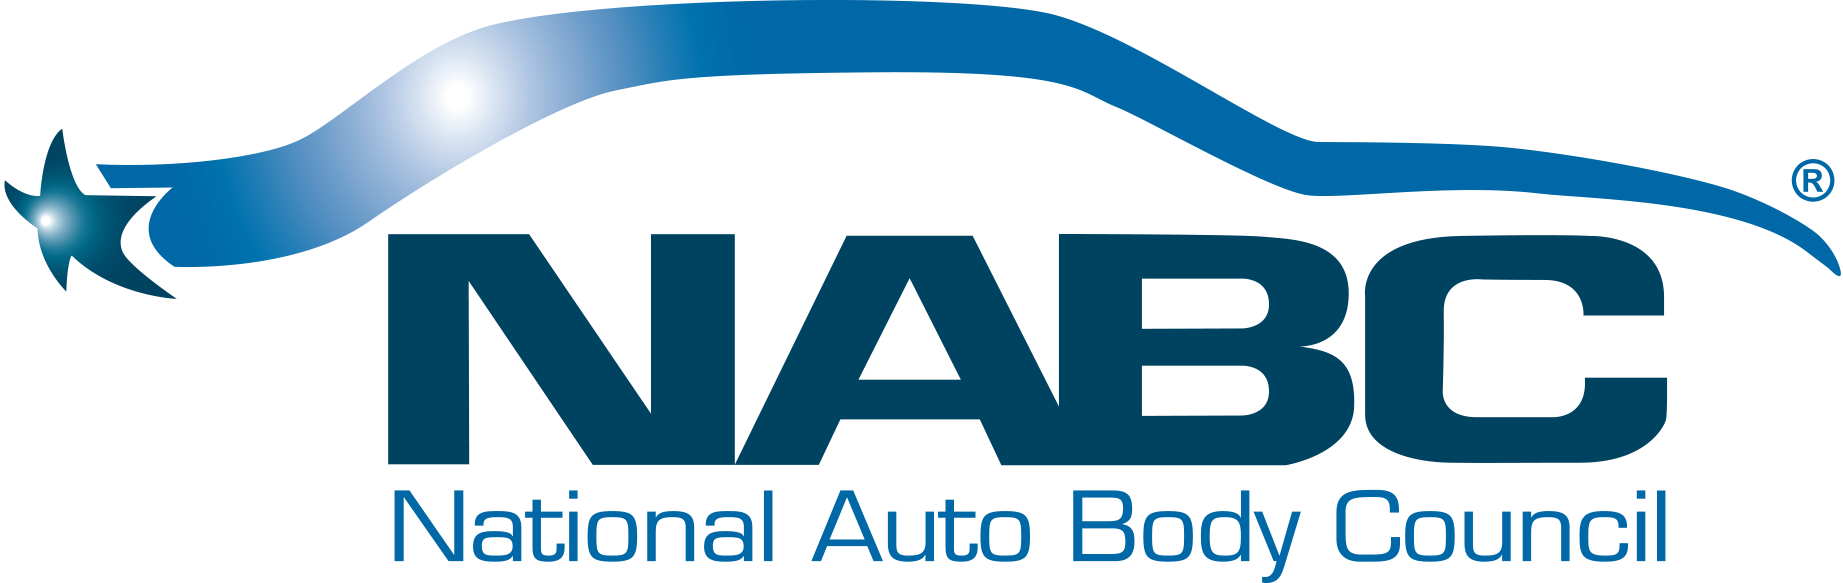 National Auto Body Council Logo